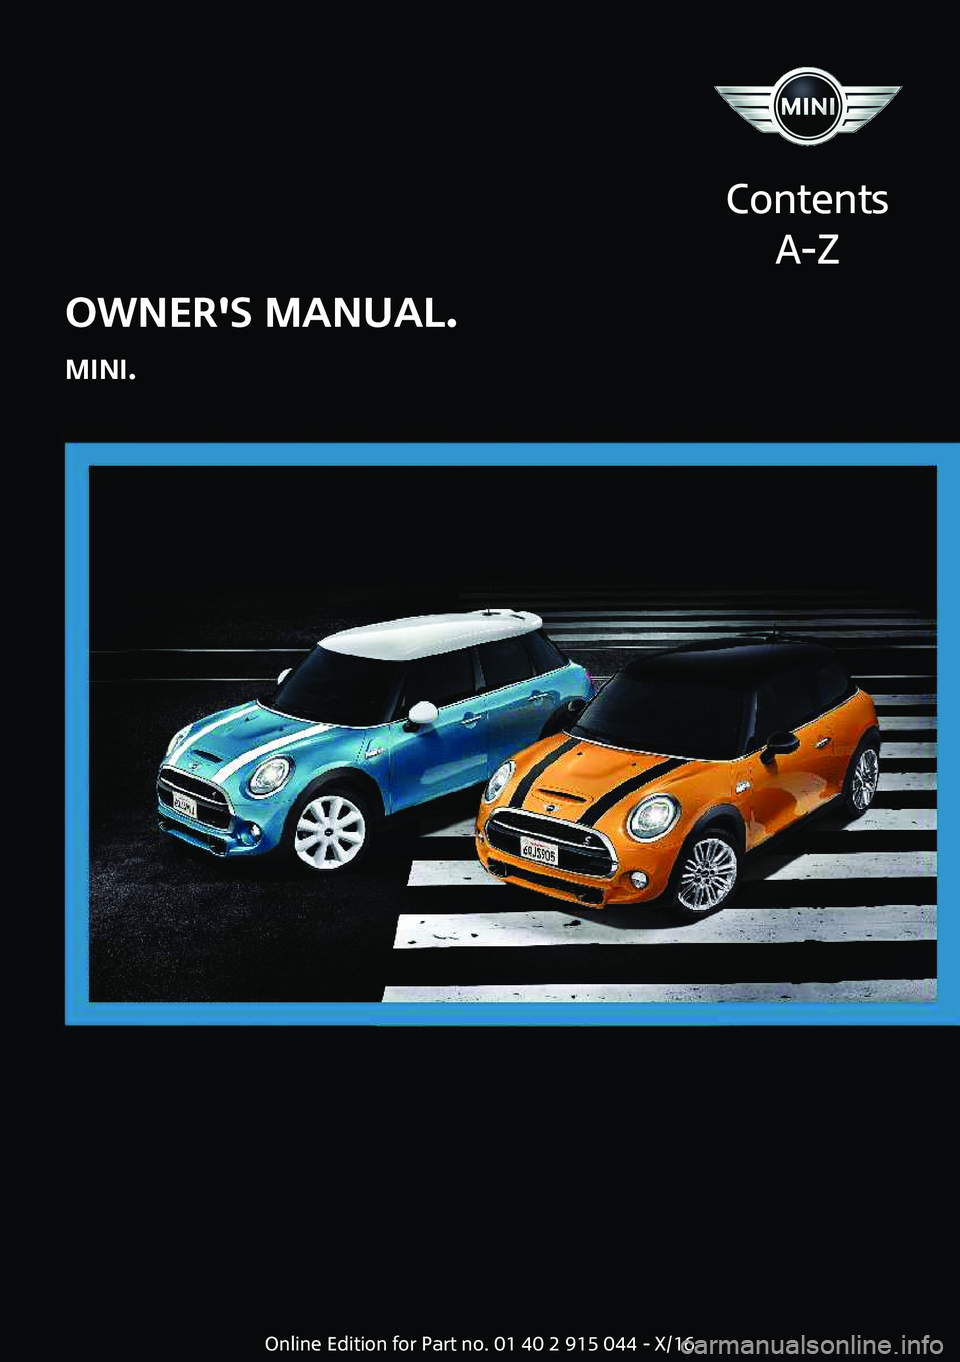 MINI COOPER 2017  Owners Manual �O�W�N�E�R��S��M�A�N�U�A�L�.
�M�I�N�I�.
�C�o�n�t�e�n�t�s �A�-�Z�O�n�l�i�n�e� �E�d�i�t�i�o�n� �f�o�r� �P�a�r�t� �n�o�.� �0�1� �4�0� �2� �9�1�5� �0�4�4� �-� �X�/�1�6  